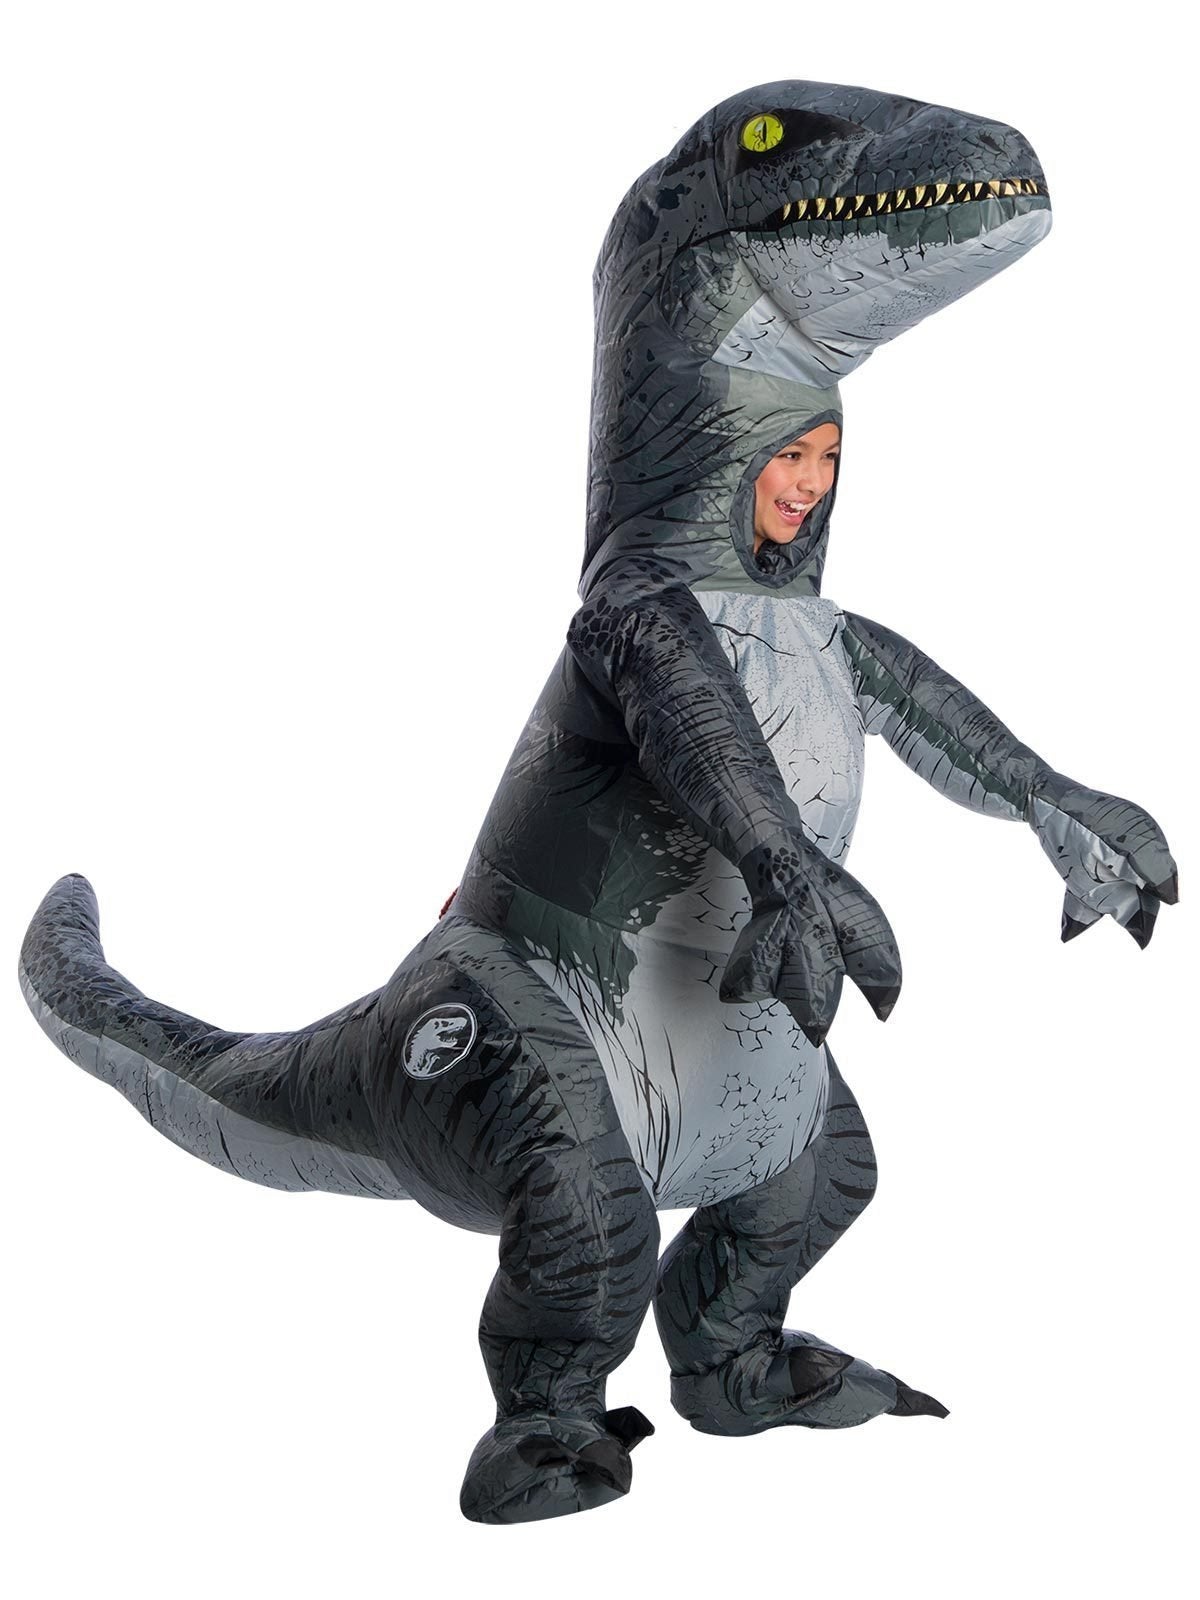 Velociraptor 'Blue' Inflatable Costume for Kids - Universal Jurassic World